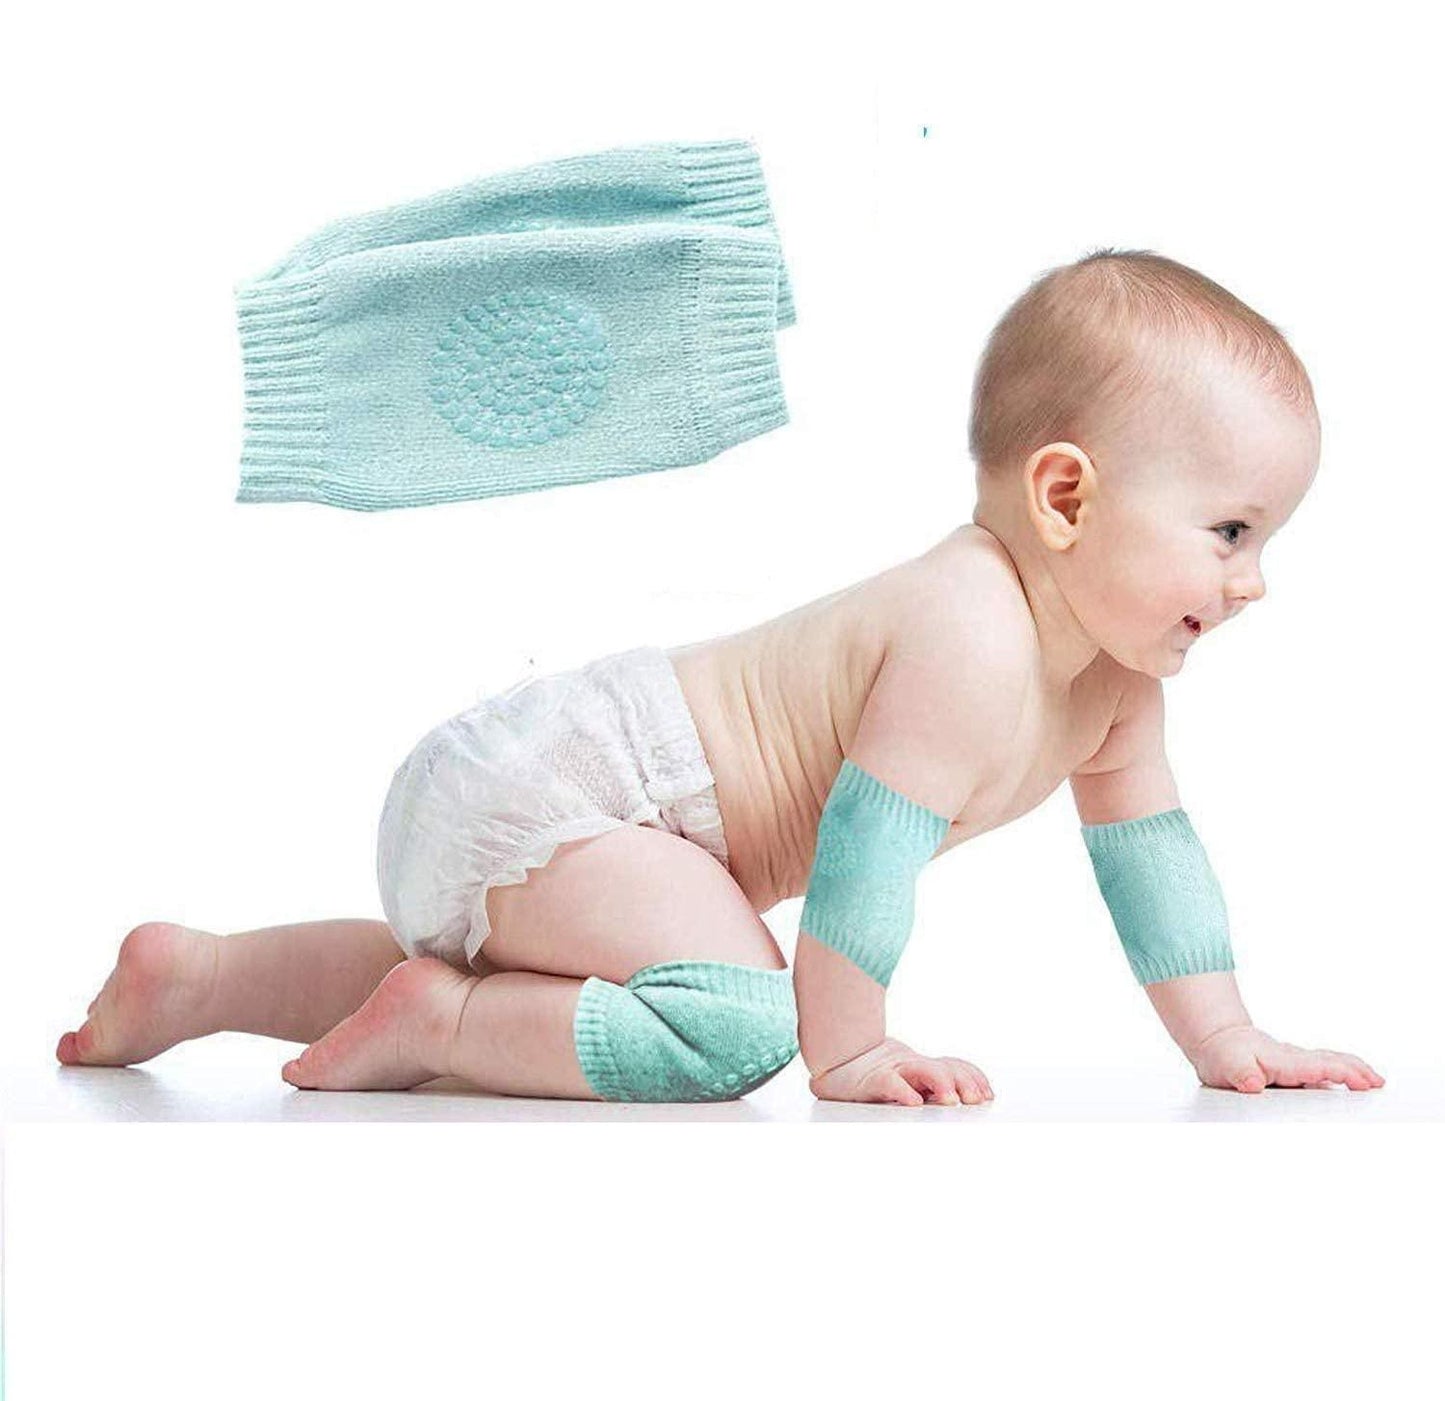 Baby Protection Kit Combo: Head Cap, Shower Cap, Knee Cap